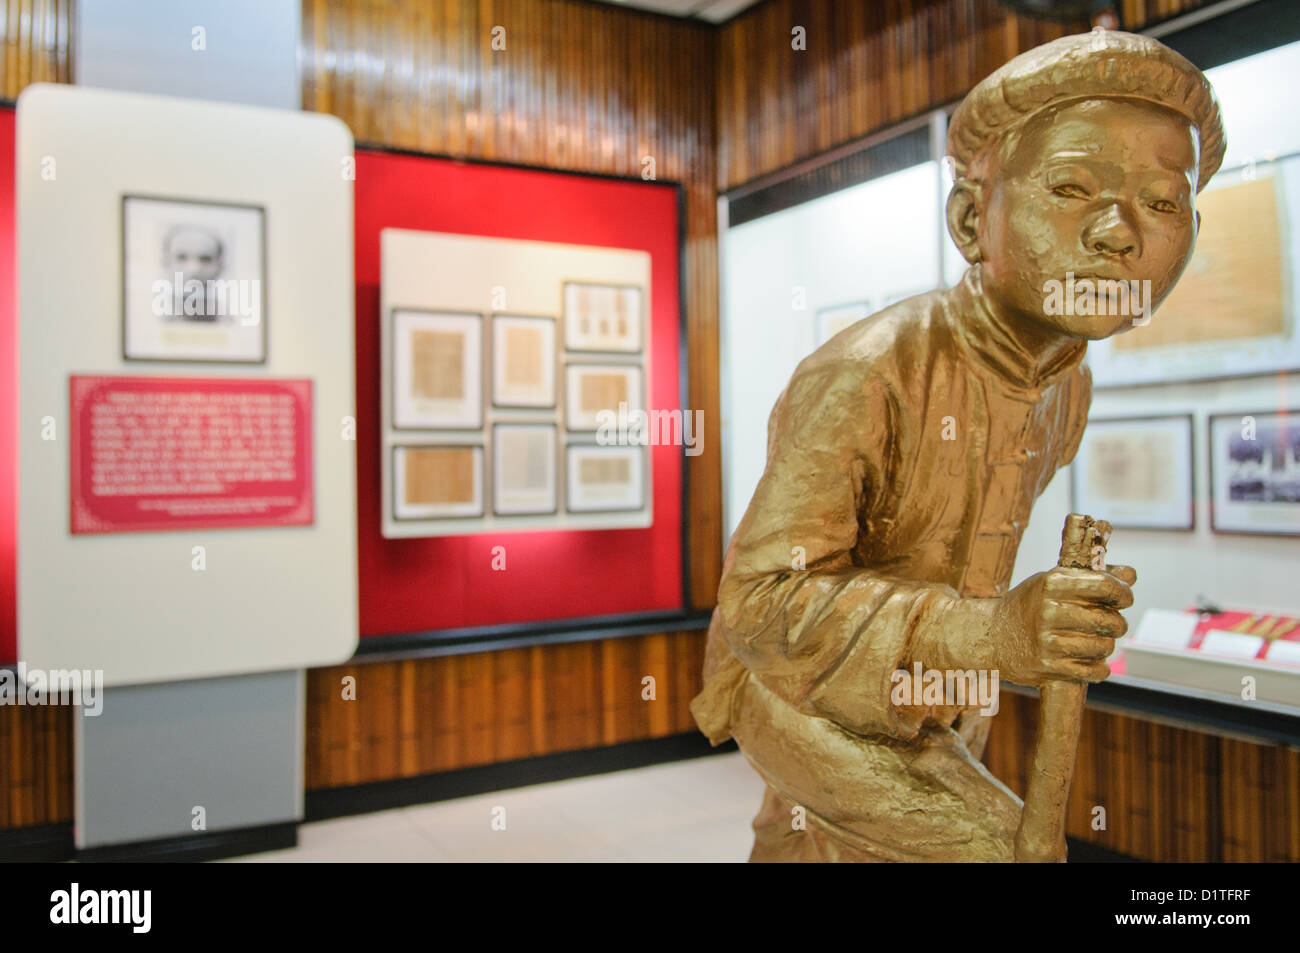 HANOI, Vietnam - Statue und ausstellen. Das Museum der Vietnamesischen Revolution in der Tong Dan Gegend von Hanoi, nicht weit vom Hoan Kiem See, wurde 1959 gegründet und ist mit der Geschichte der sozialistischen Revolutionären Bewegung in Vietnam gewidmet. Stockfoto